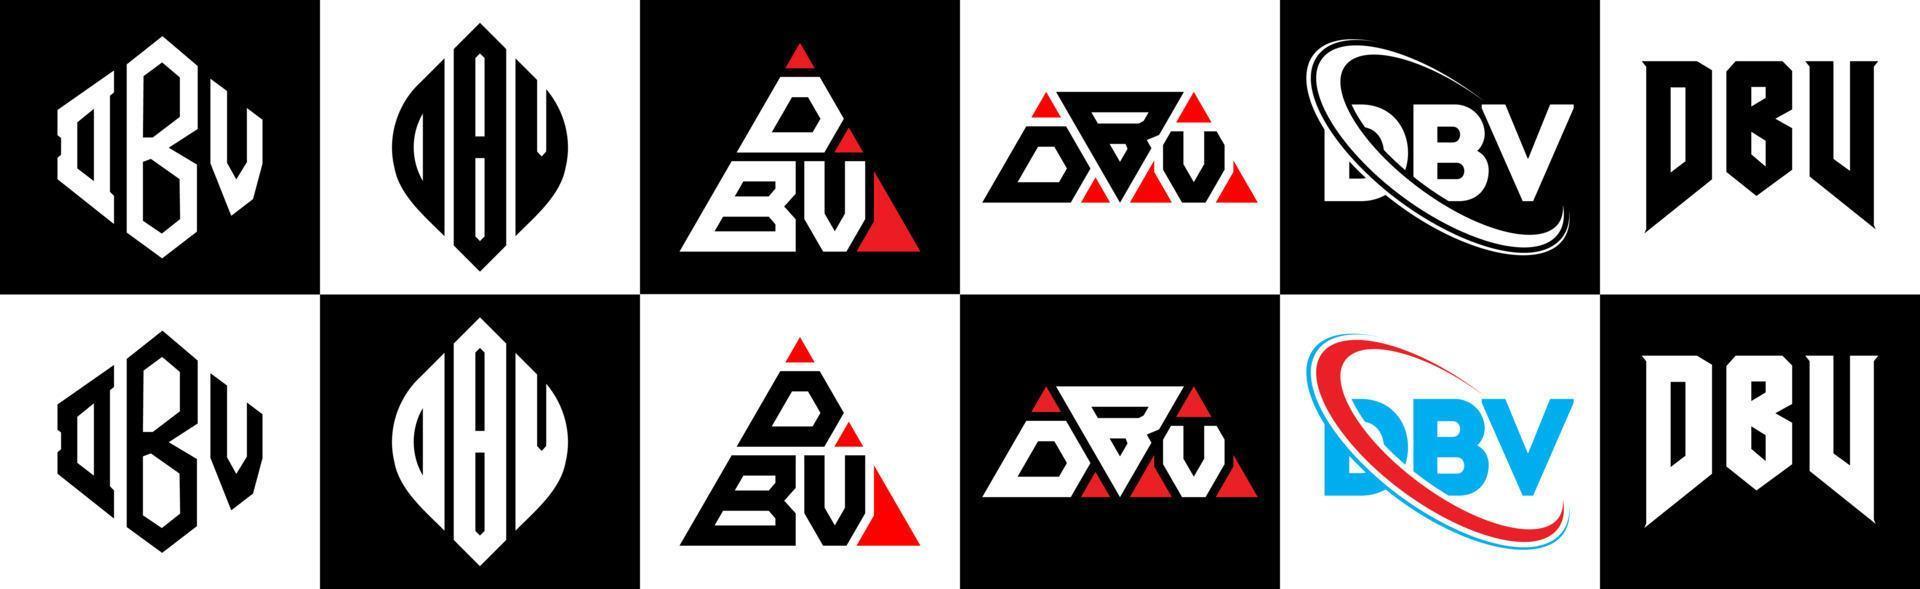 dbv-Buchstaben-Logo-Design in sechs Stilen. dbv polygon, kreis, dreieck, hexagon, flacher und einfacher stil mit schwarz-weißem buchstabenlogo in einer zeichenfläche. dbv minimalistisches und klassisches Logo vektor